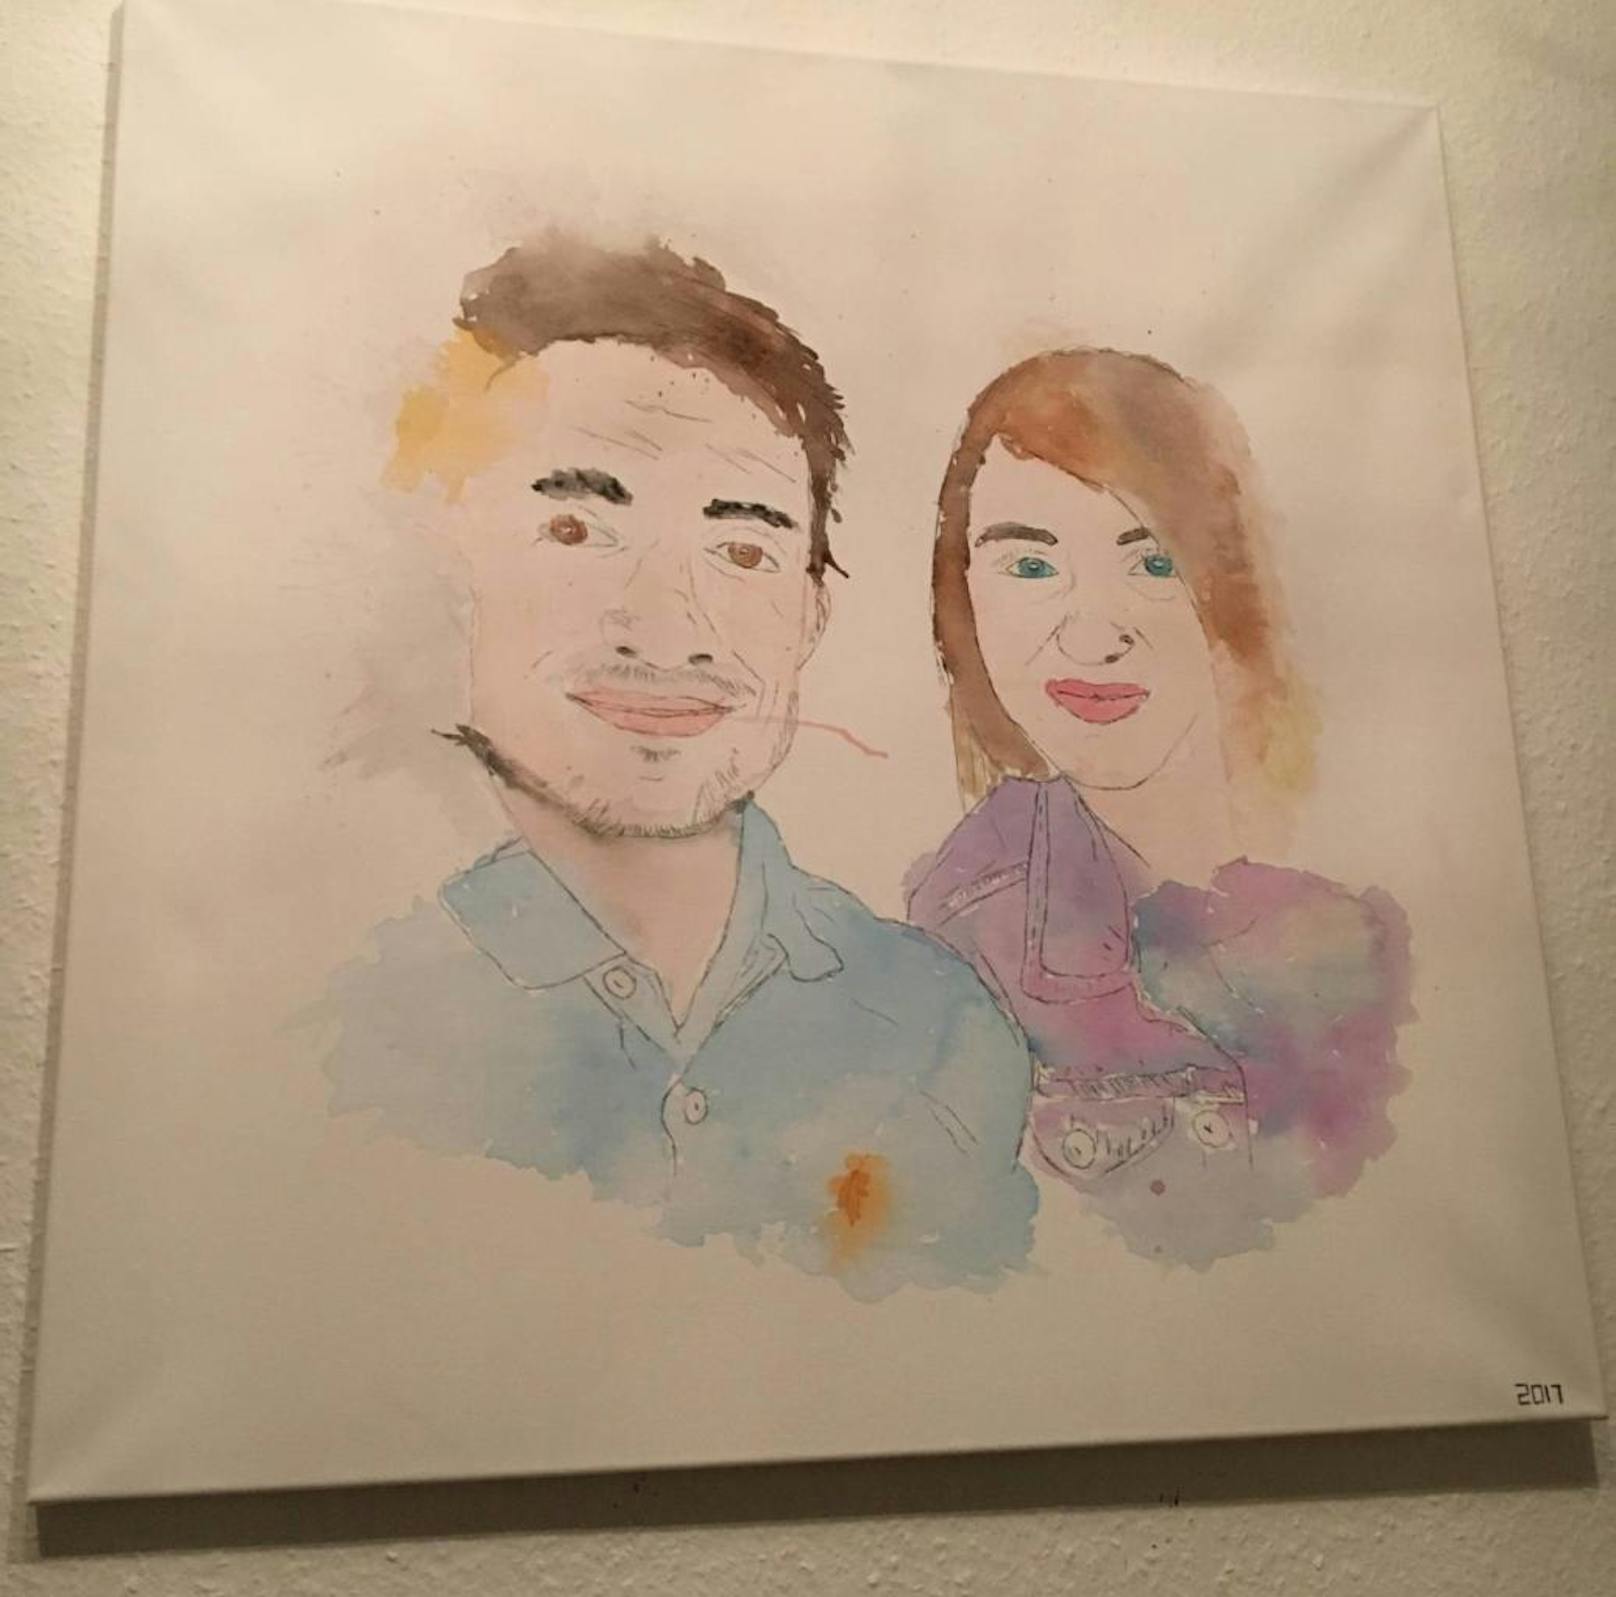 Kathi: "Dieses gemalte Bild zeigt meinen Freund und mich, er hat es von einen gemeinsamen Foto abgemalt und auf Leinwand gebracht (:"